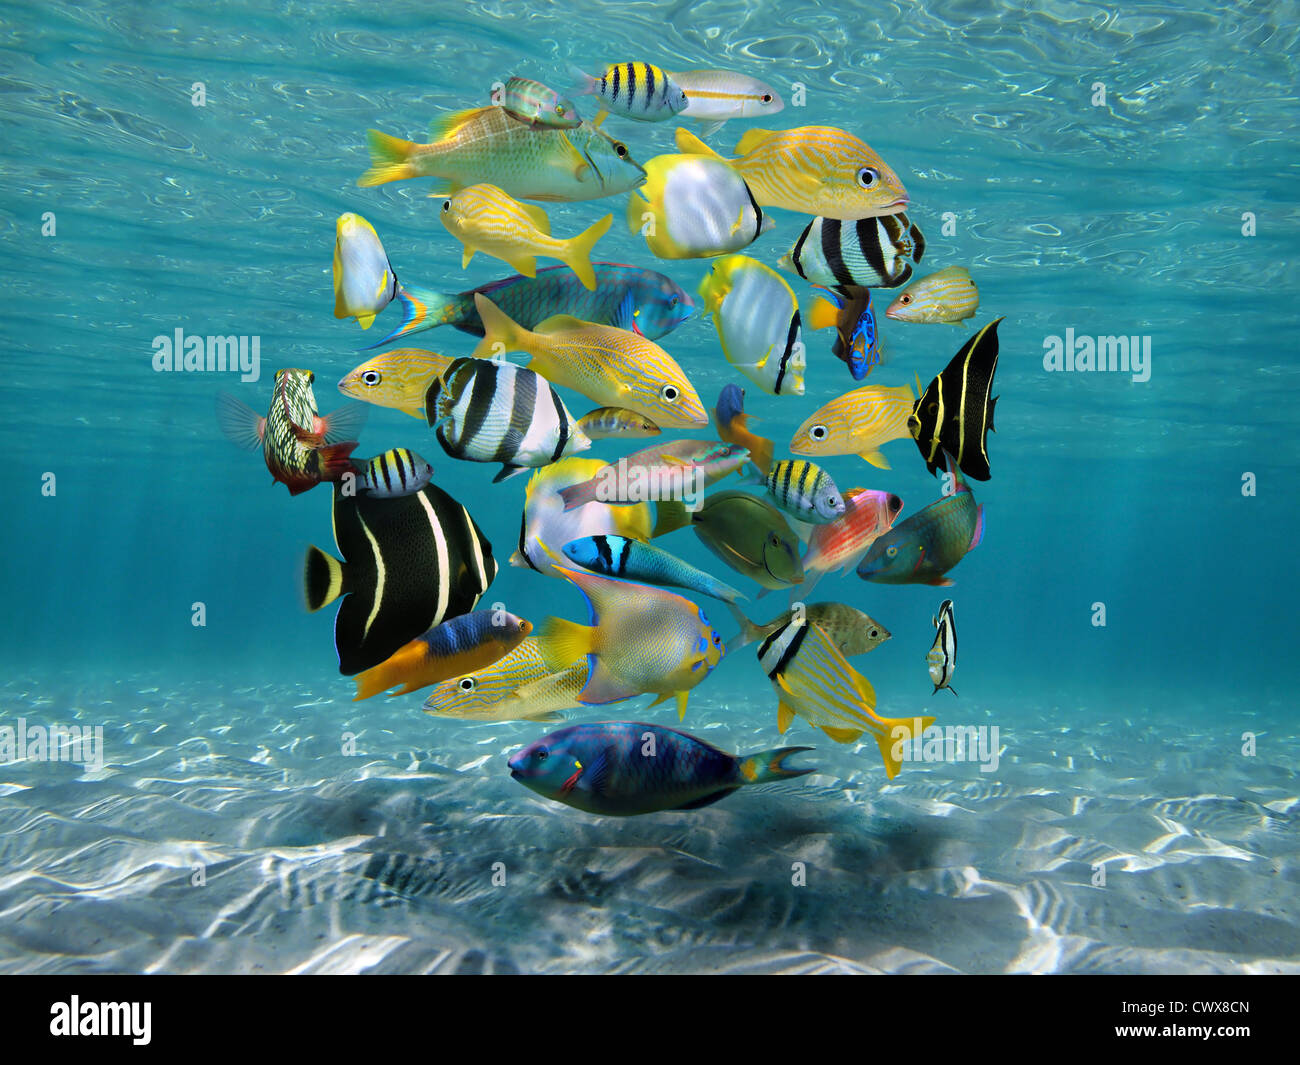 Shoal de coloridos peces tropicales agrupados en forma de círculo (compuesto digitalmente) bajo el agua entre el fondo marino arenoso y la superficie del agua, mar Caribe Foto de stock